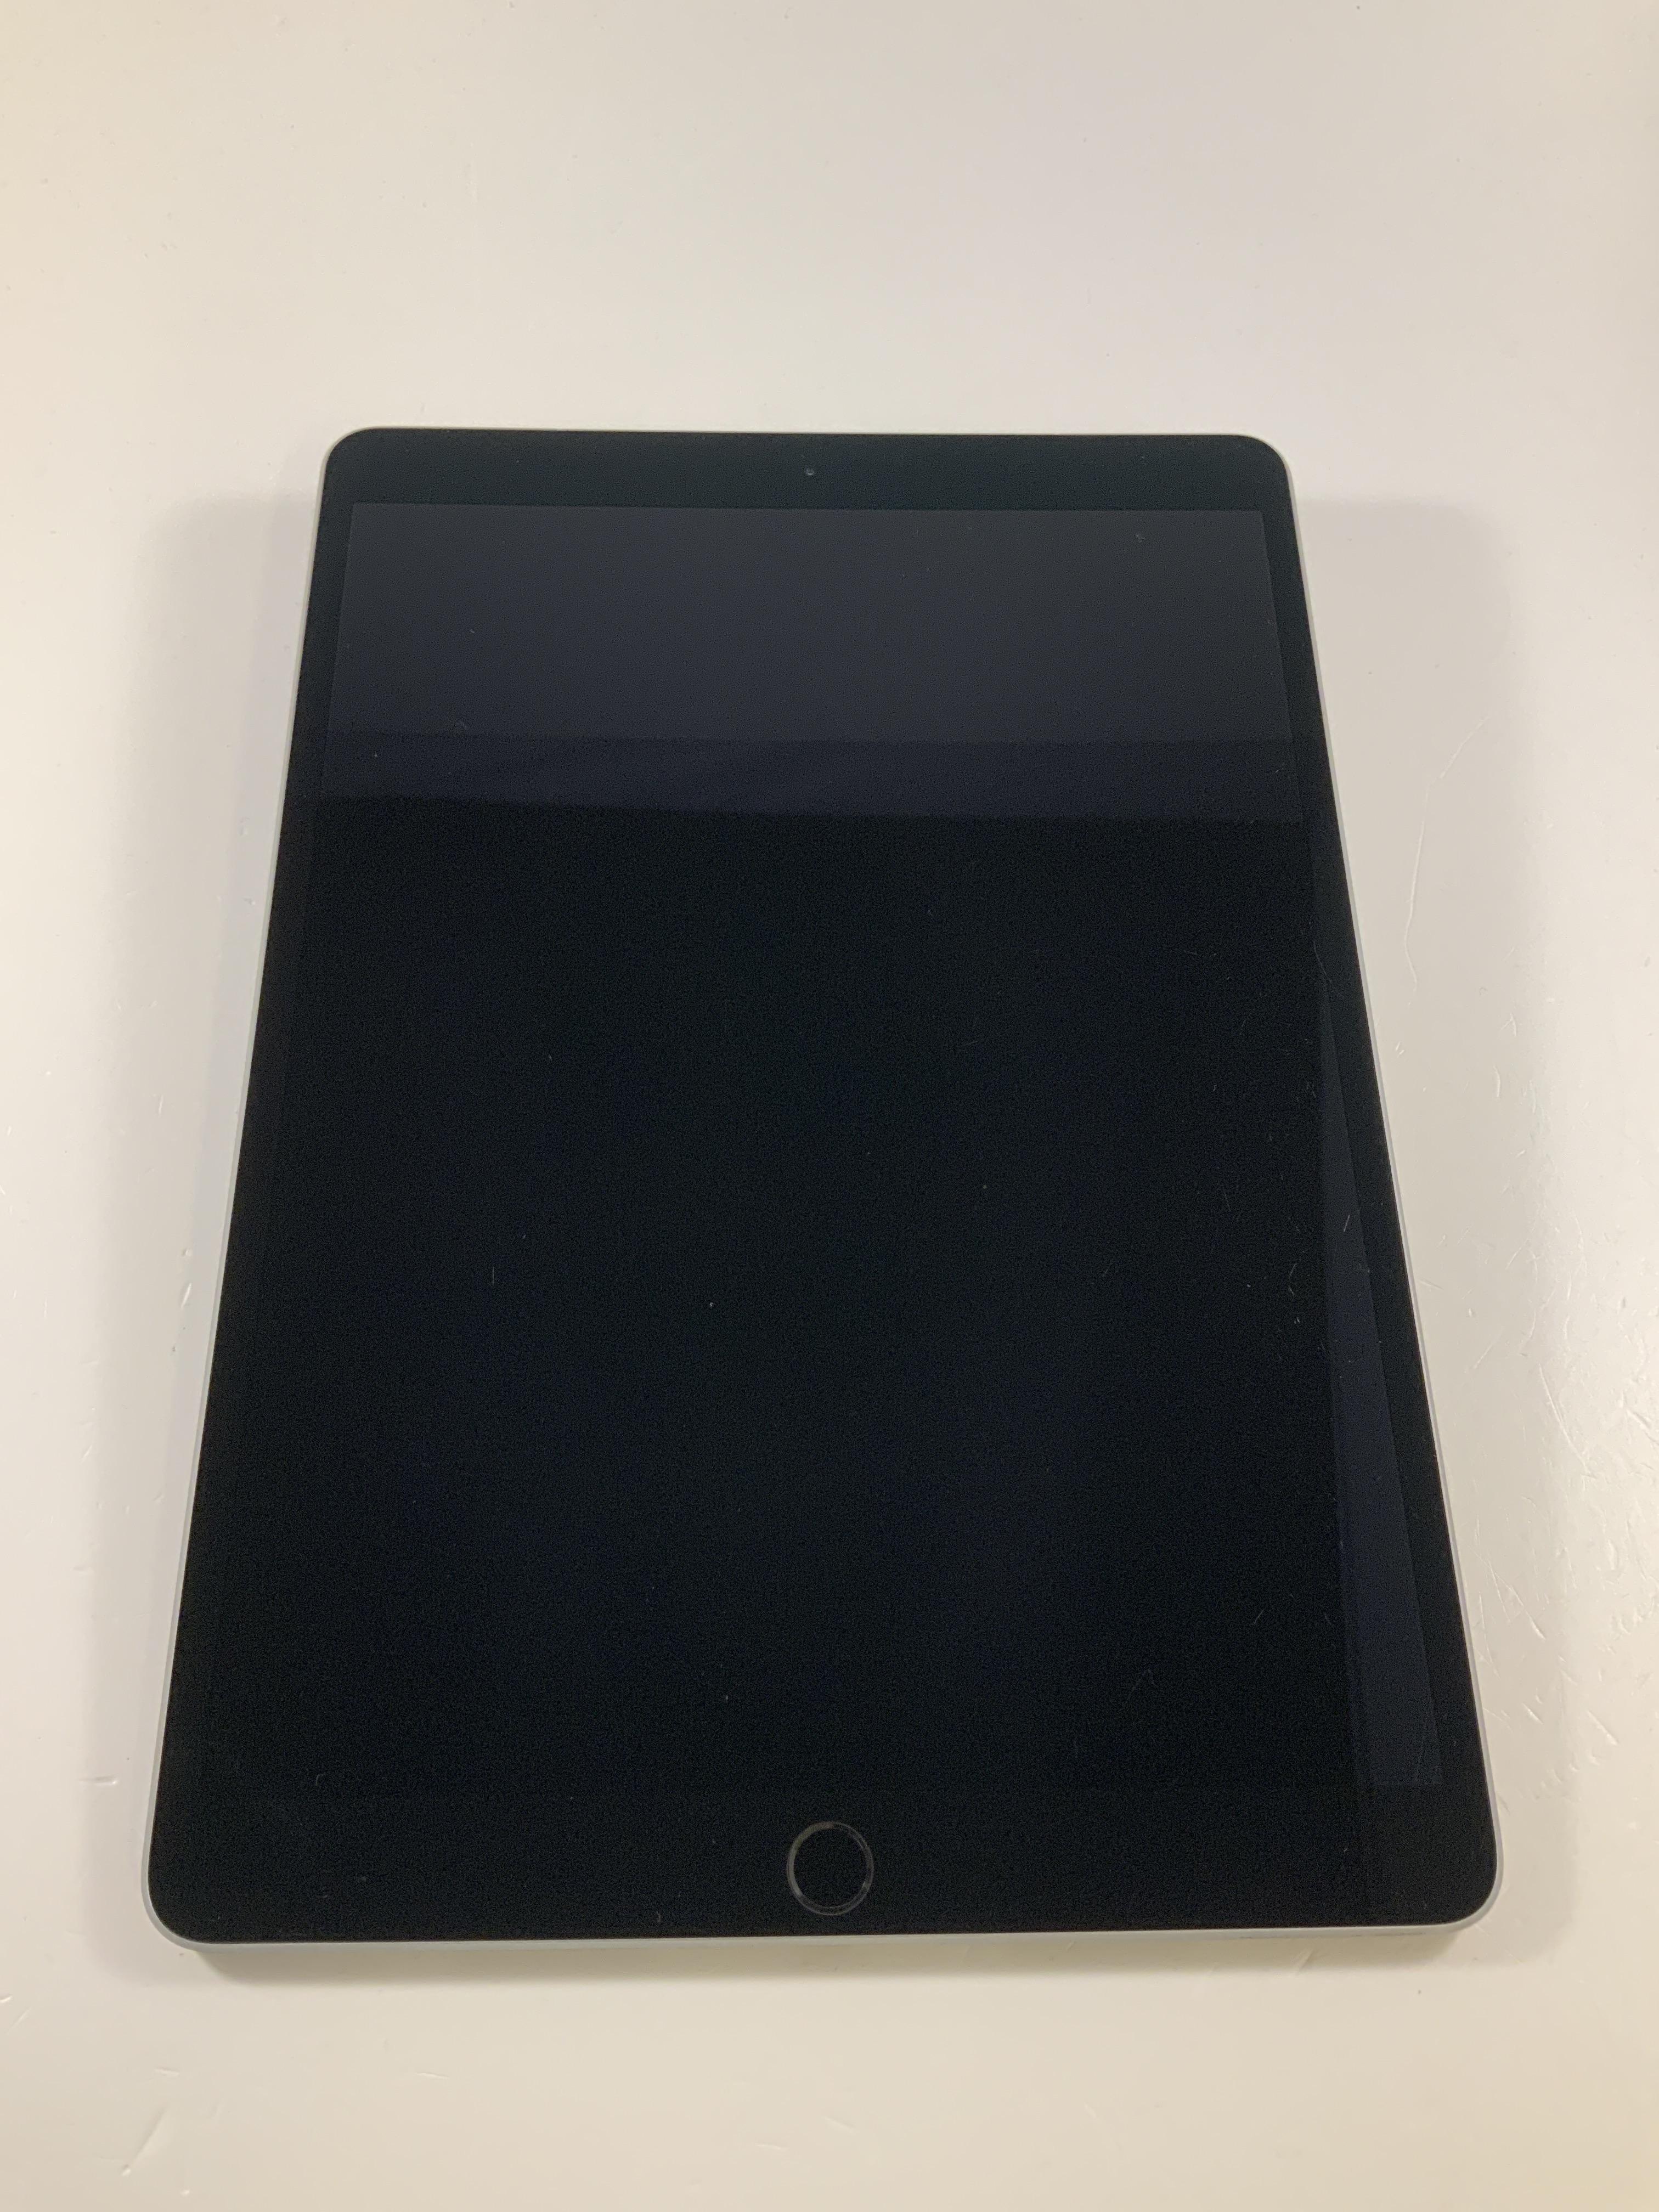 iPad Pro 10.5" Wi-Fi + Cellular 64GB, 64GB, Space Gray, Afbeelding 1